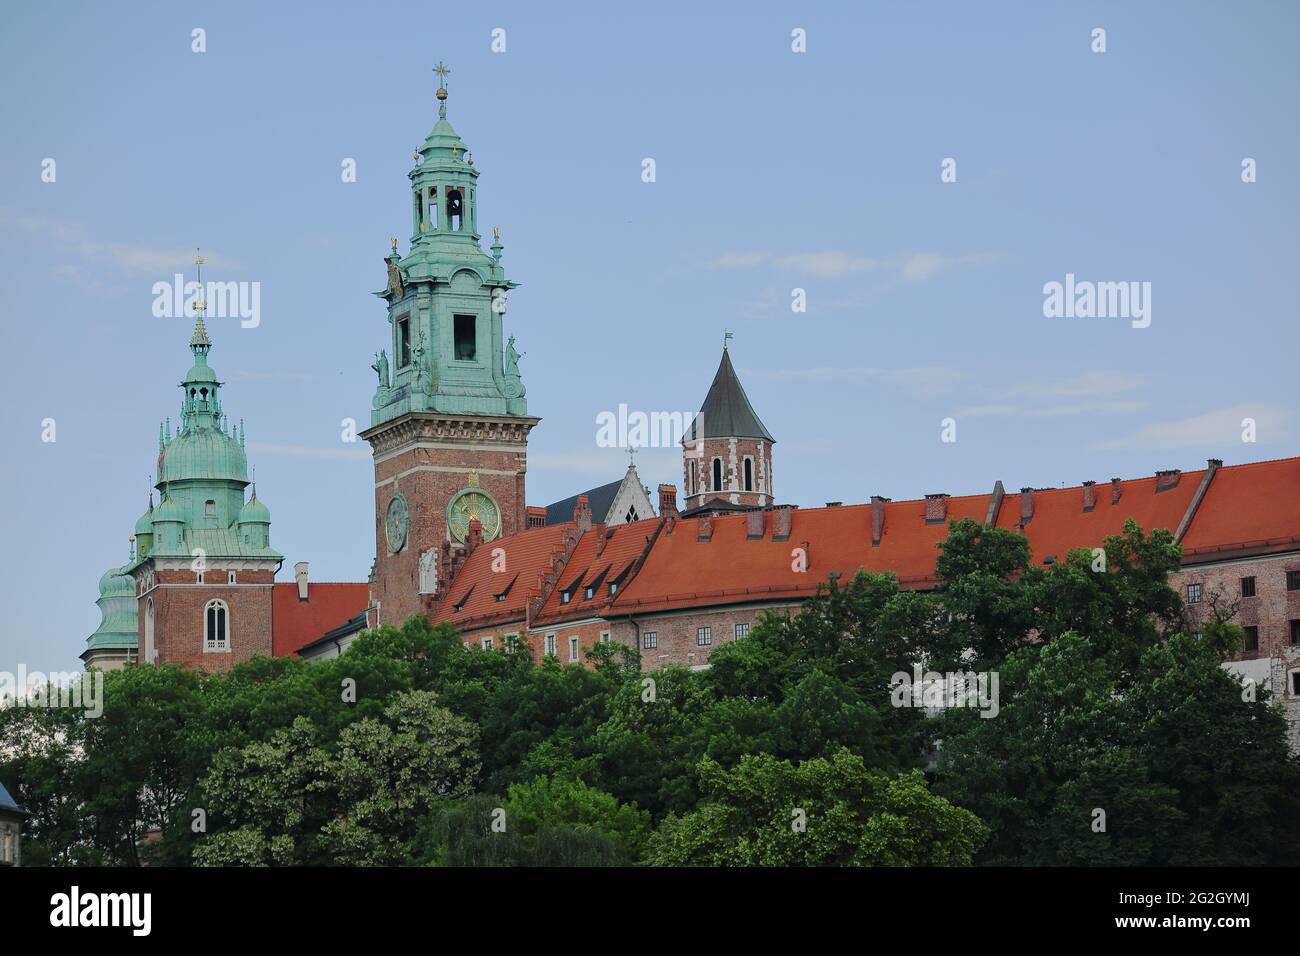 Tours de cathédrale sur le château de Wawel, arbres, horizon, Pologne, symbole de bâtiment historique de la ville et de l'histoire polonaise Banque D'Images